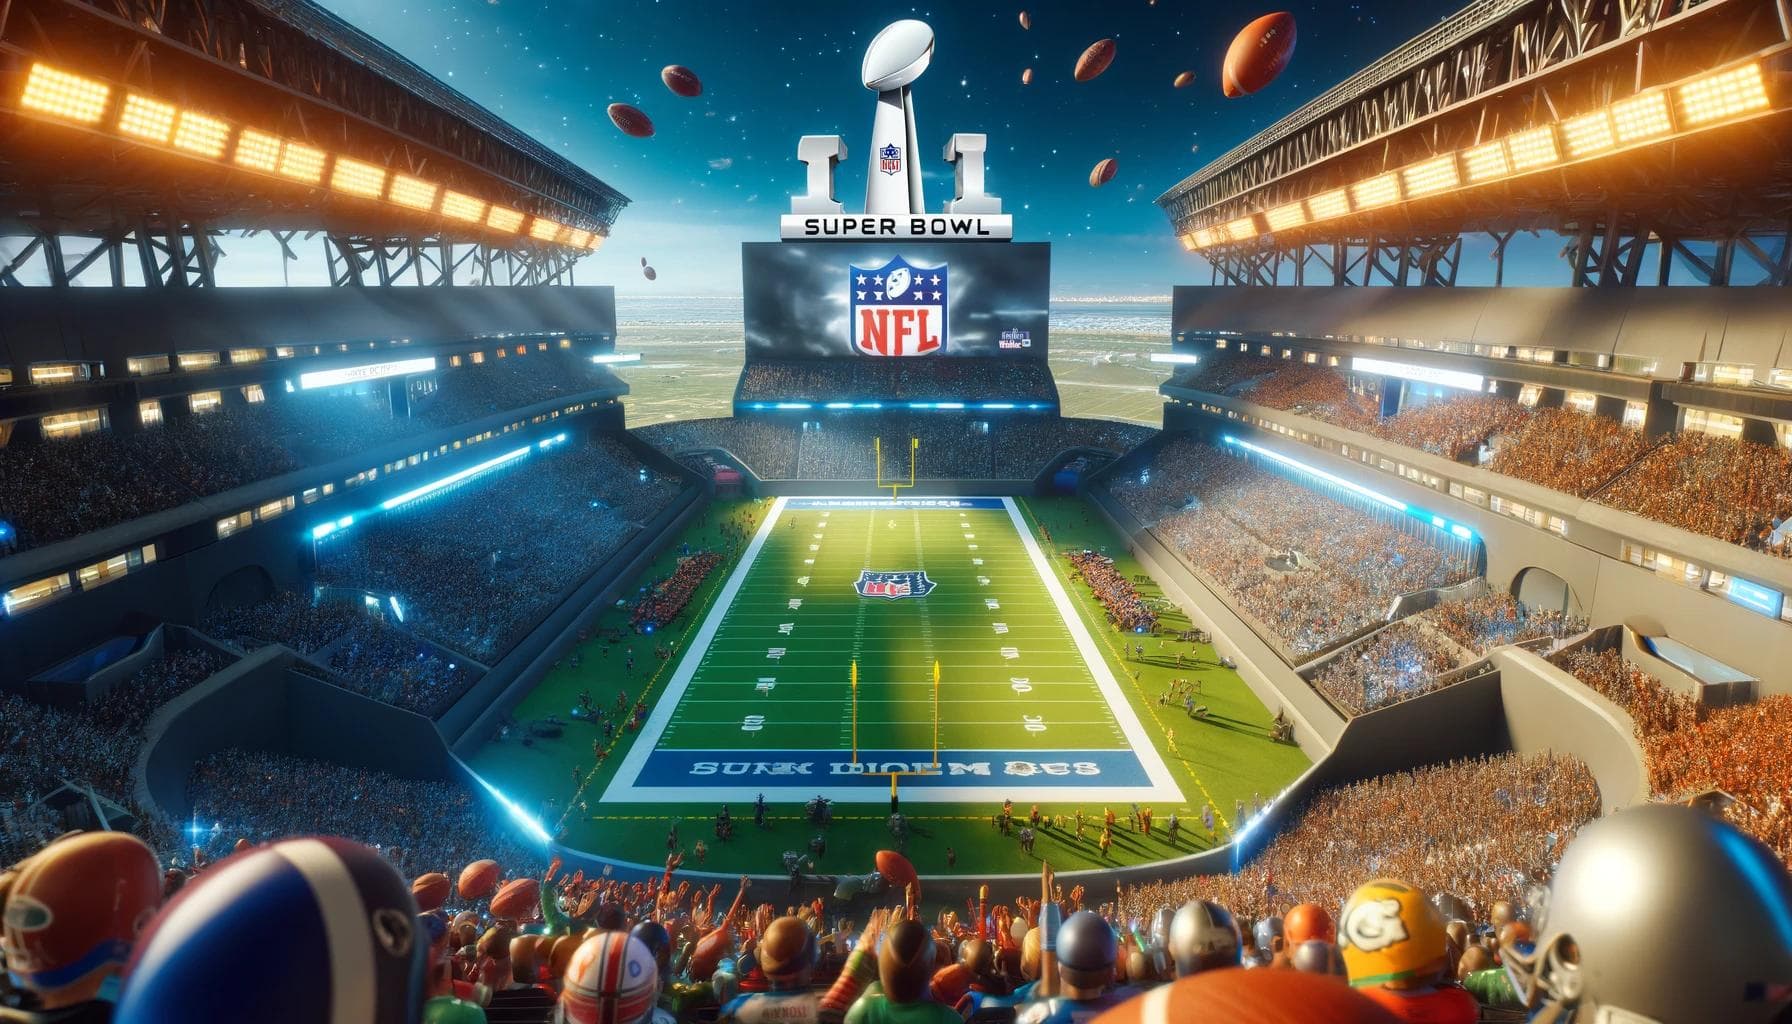 The Super Bowl Stadium